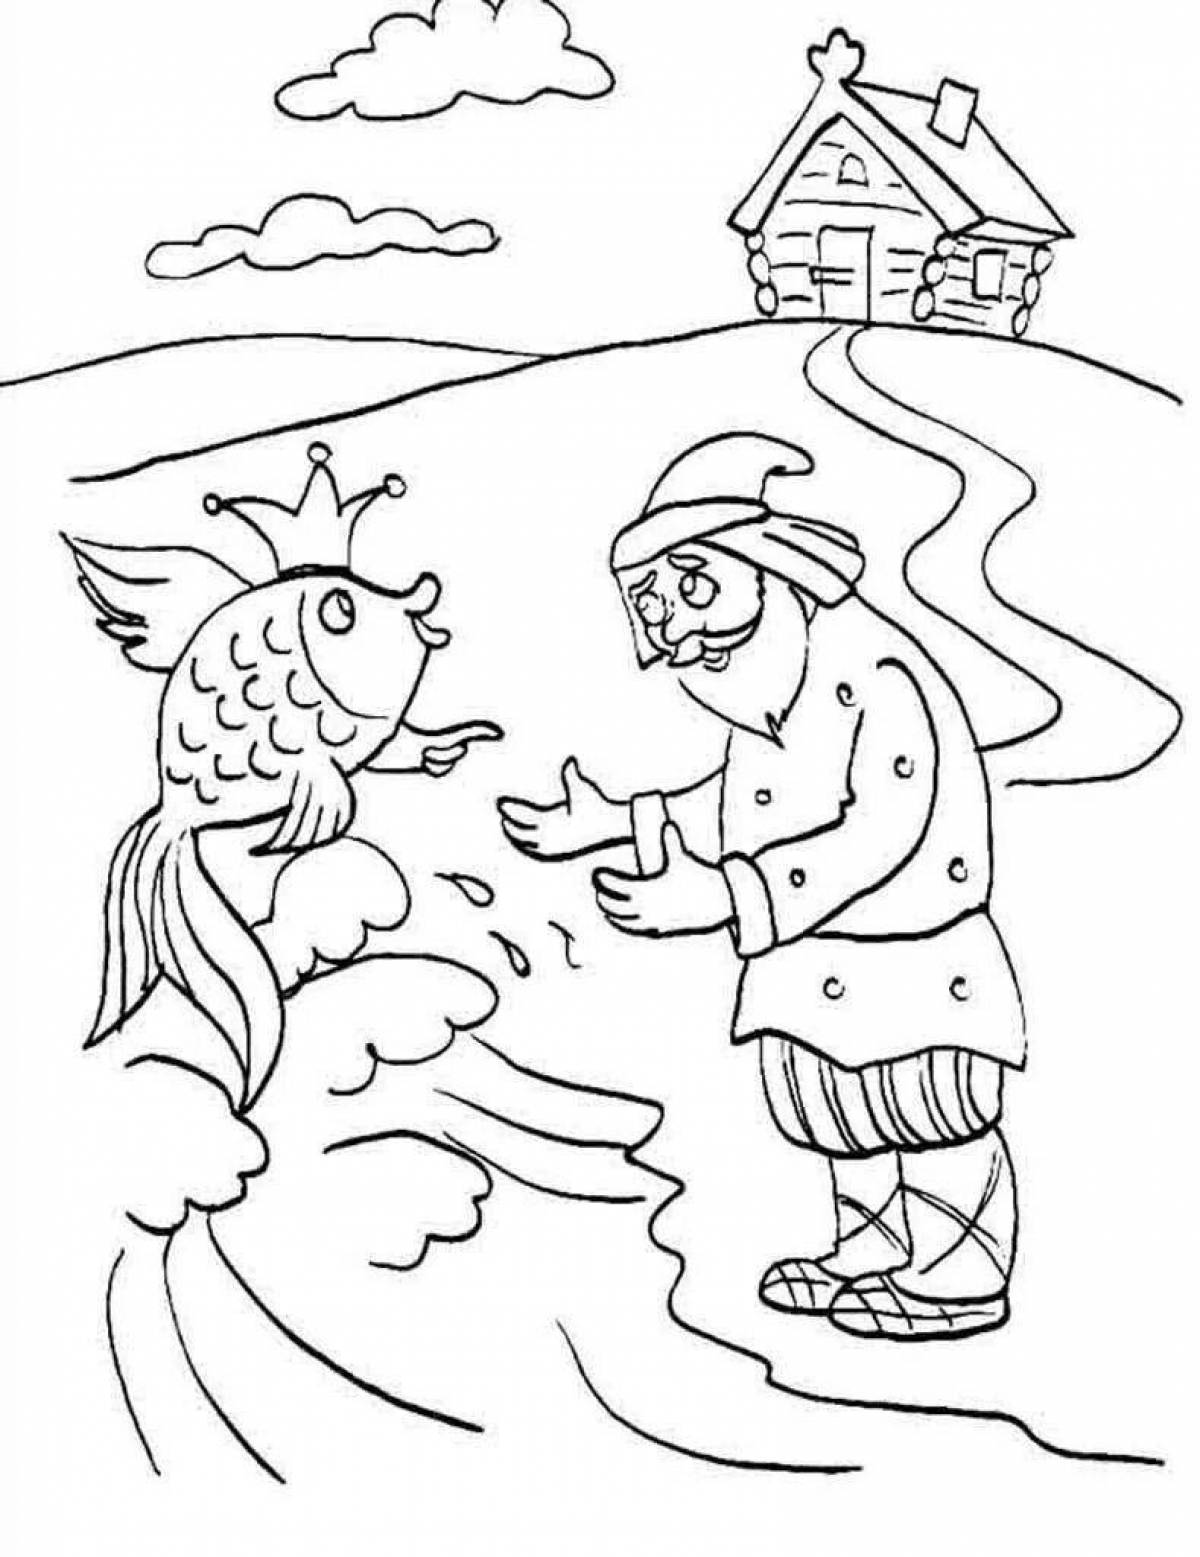 Рисунки детей к сказке о рыбаке и рыбке Пушкина